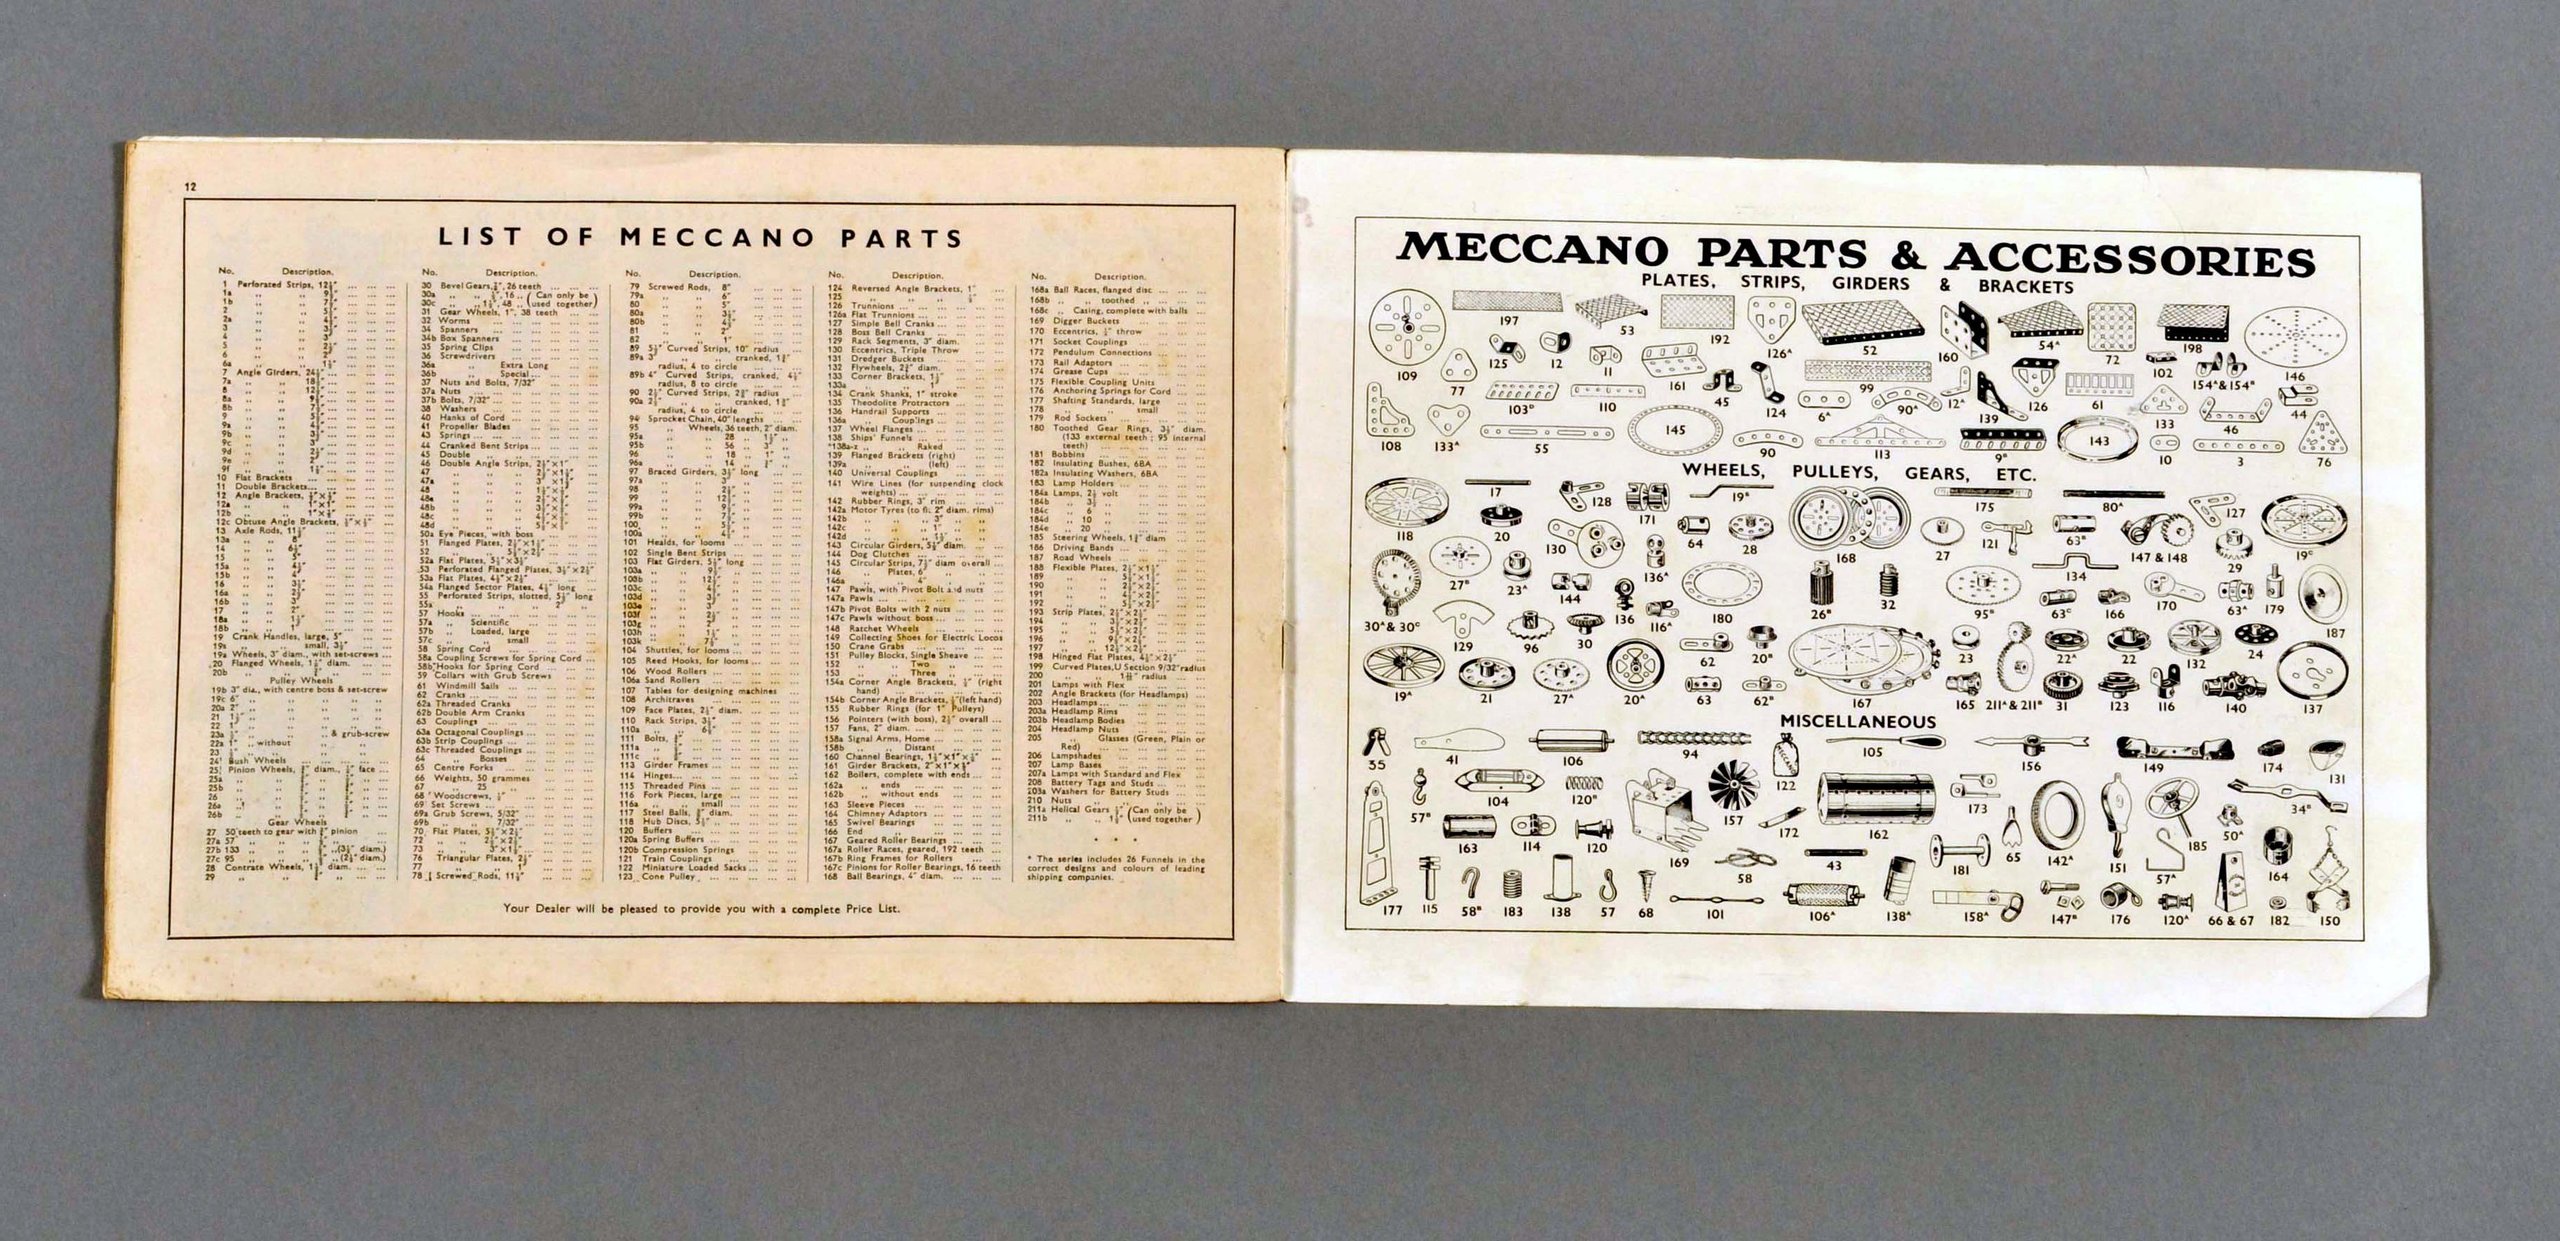 Meccano instruction book